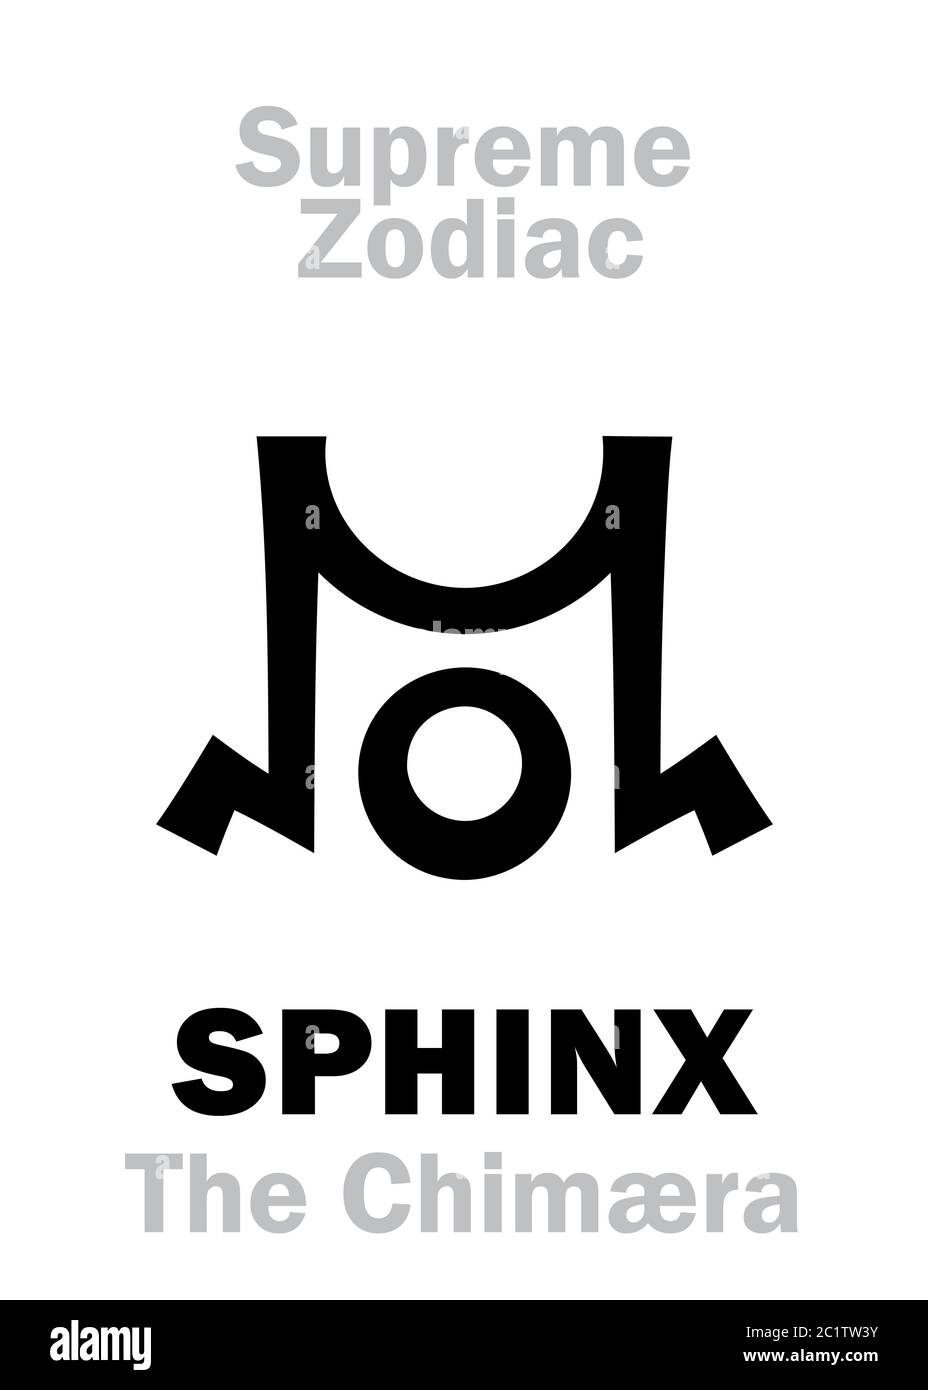 Astrologie: Zodiac suprême: SPHINX (le Chimæra)  Cygnus («la Croix du Nord») Banque D'Images